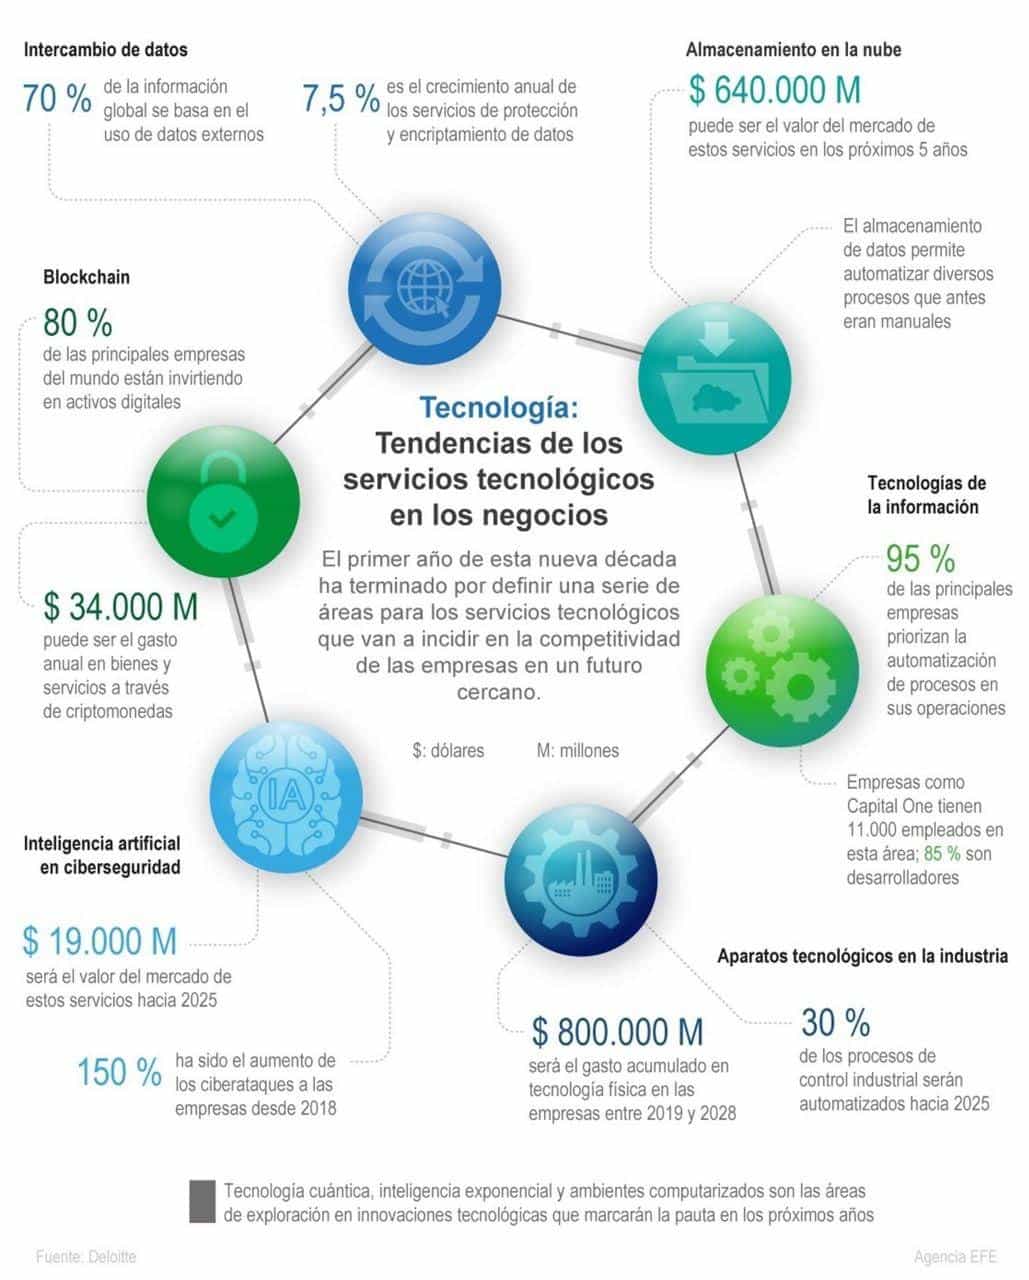 [Infografía] Tendencias de los servicios tecnológicos en los negocios 1